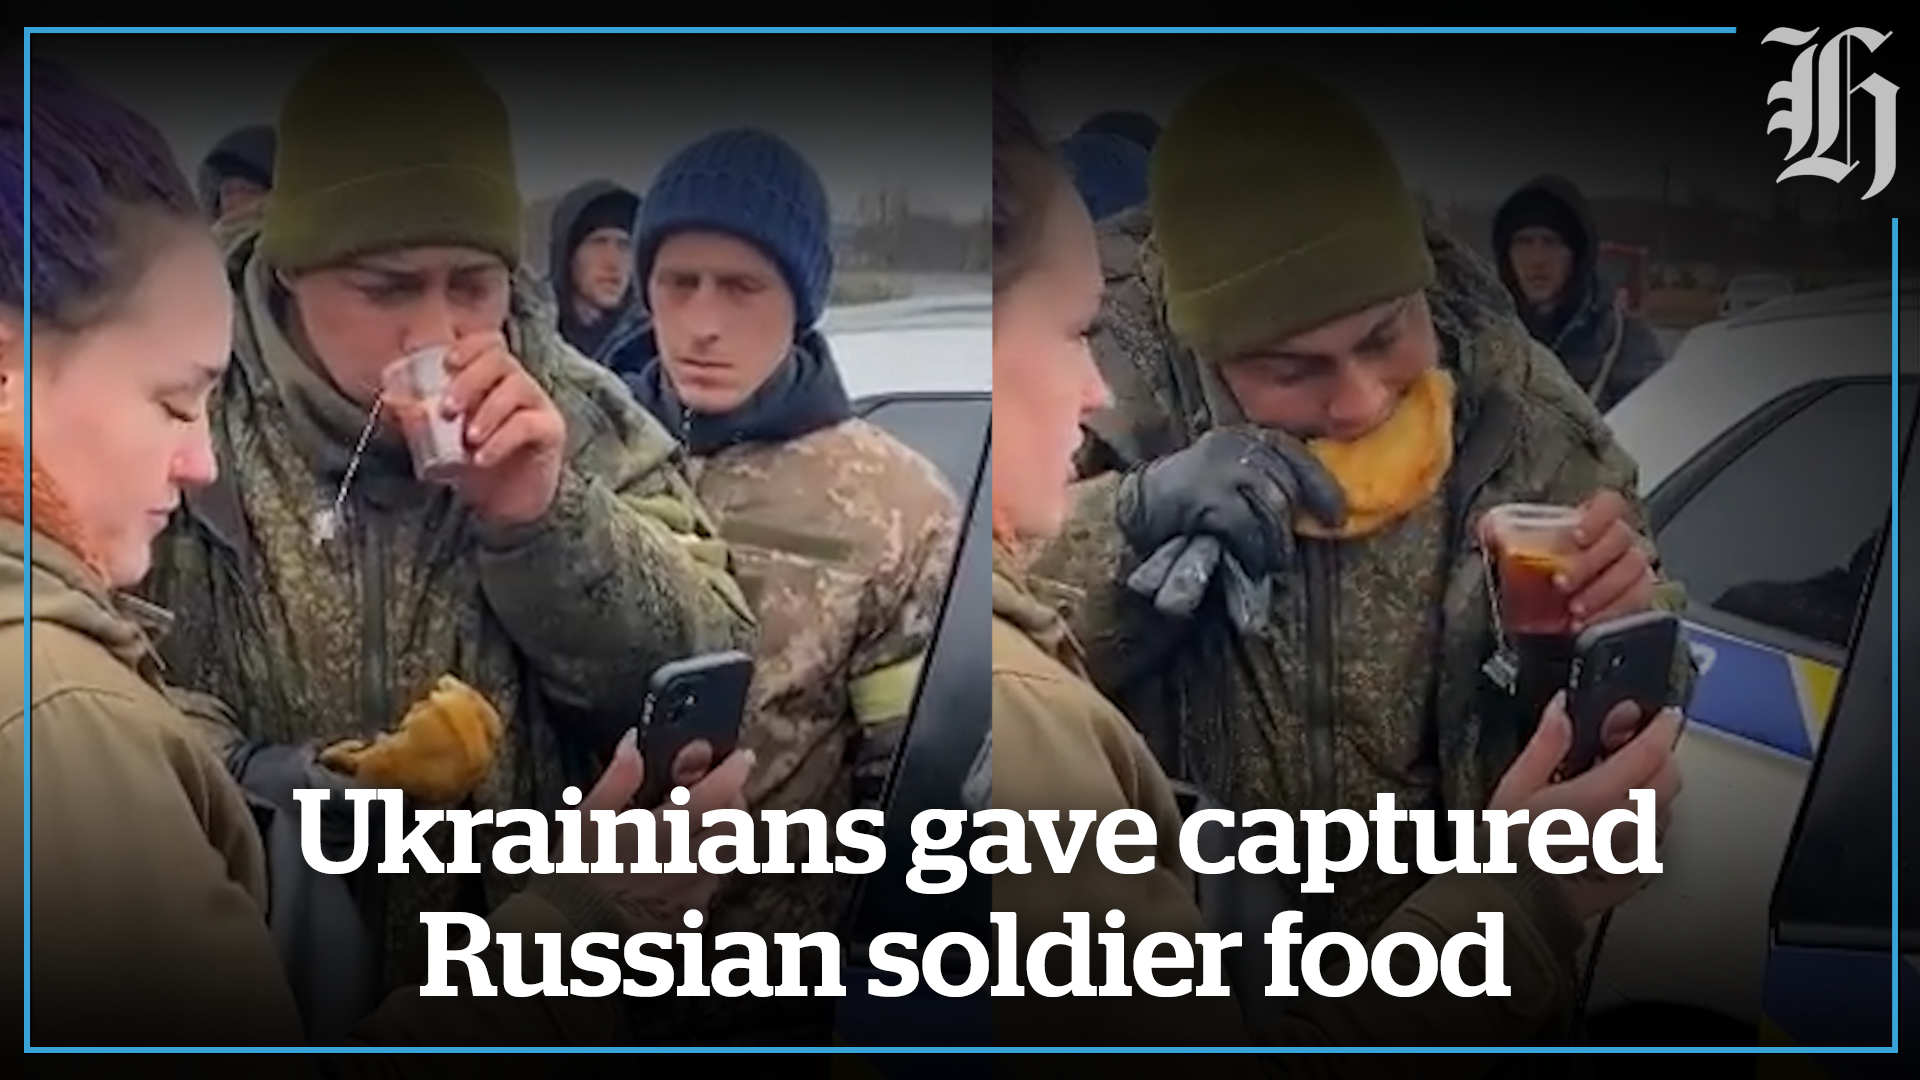 Ukrainians feed captured Russian soldier - NZ Herald